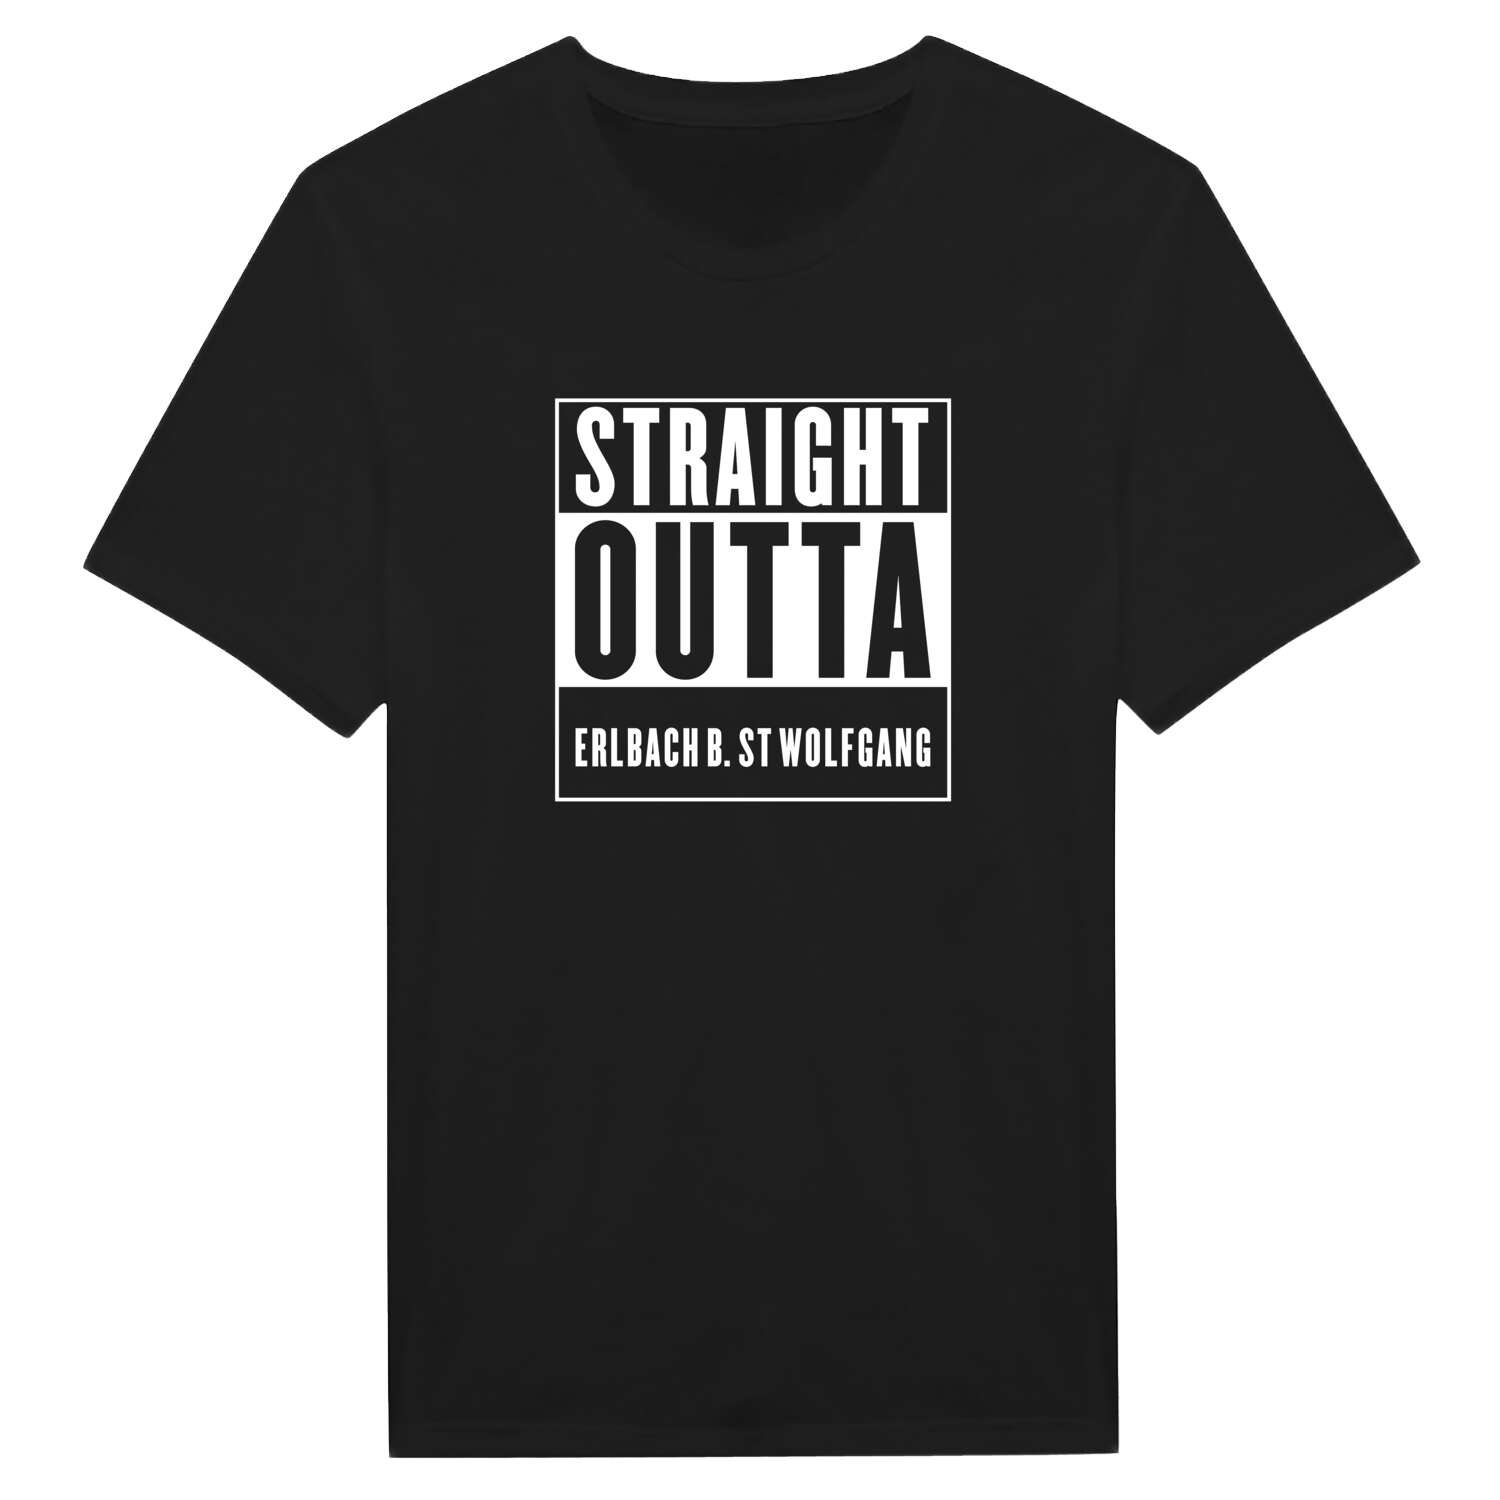 Erlbach b. St Wolfgang T-Shirt »Straight Outta«